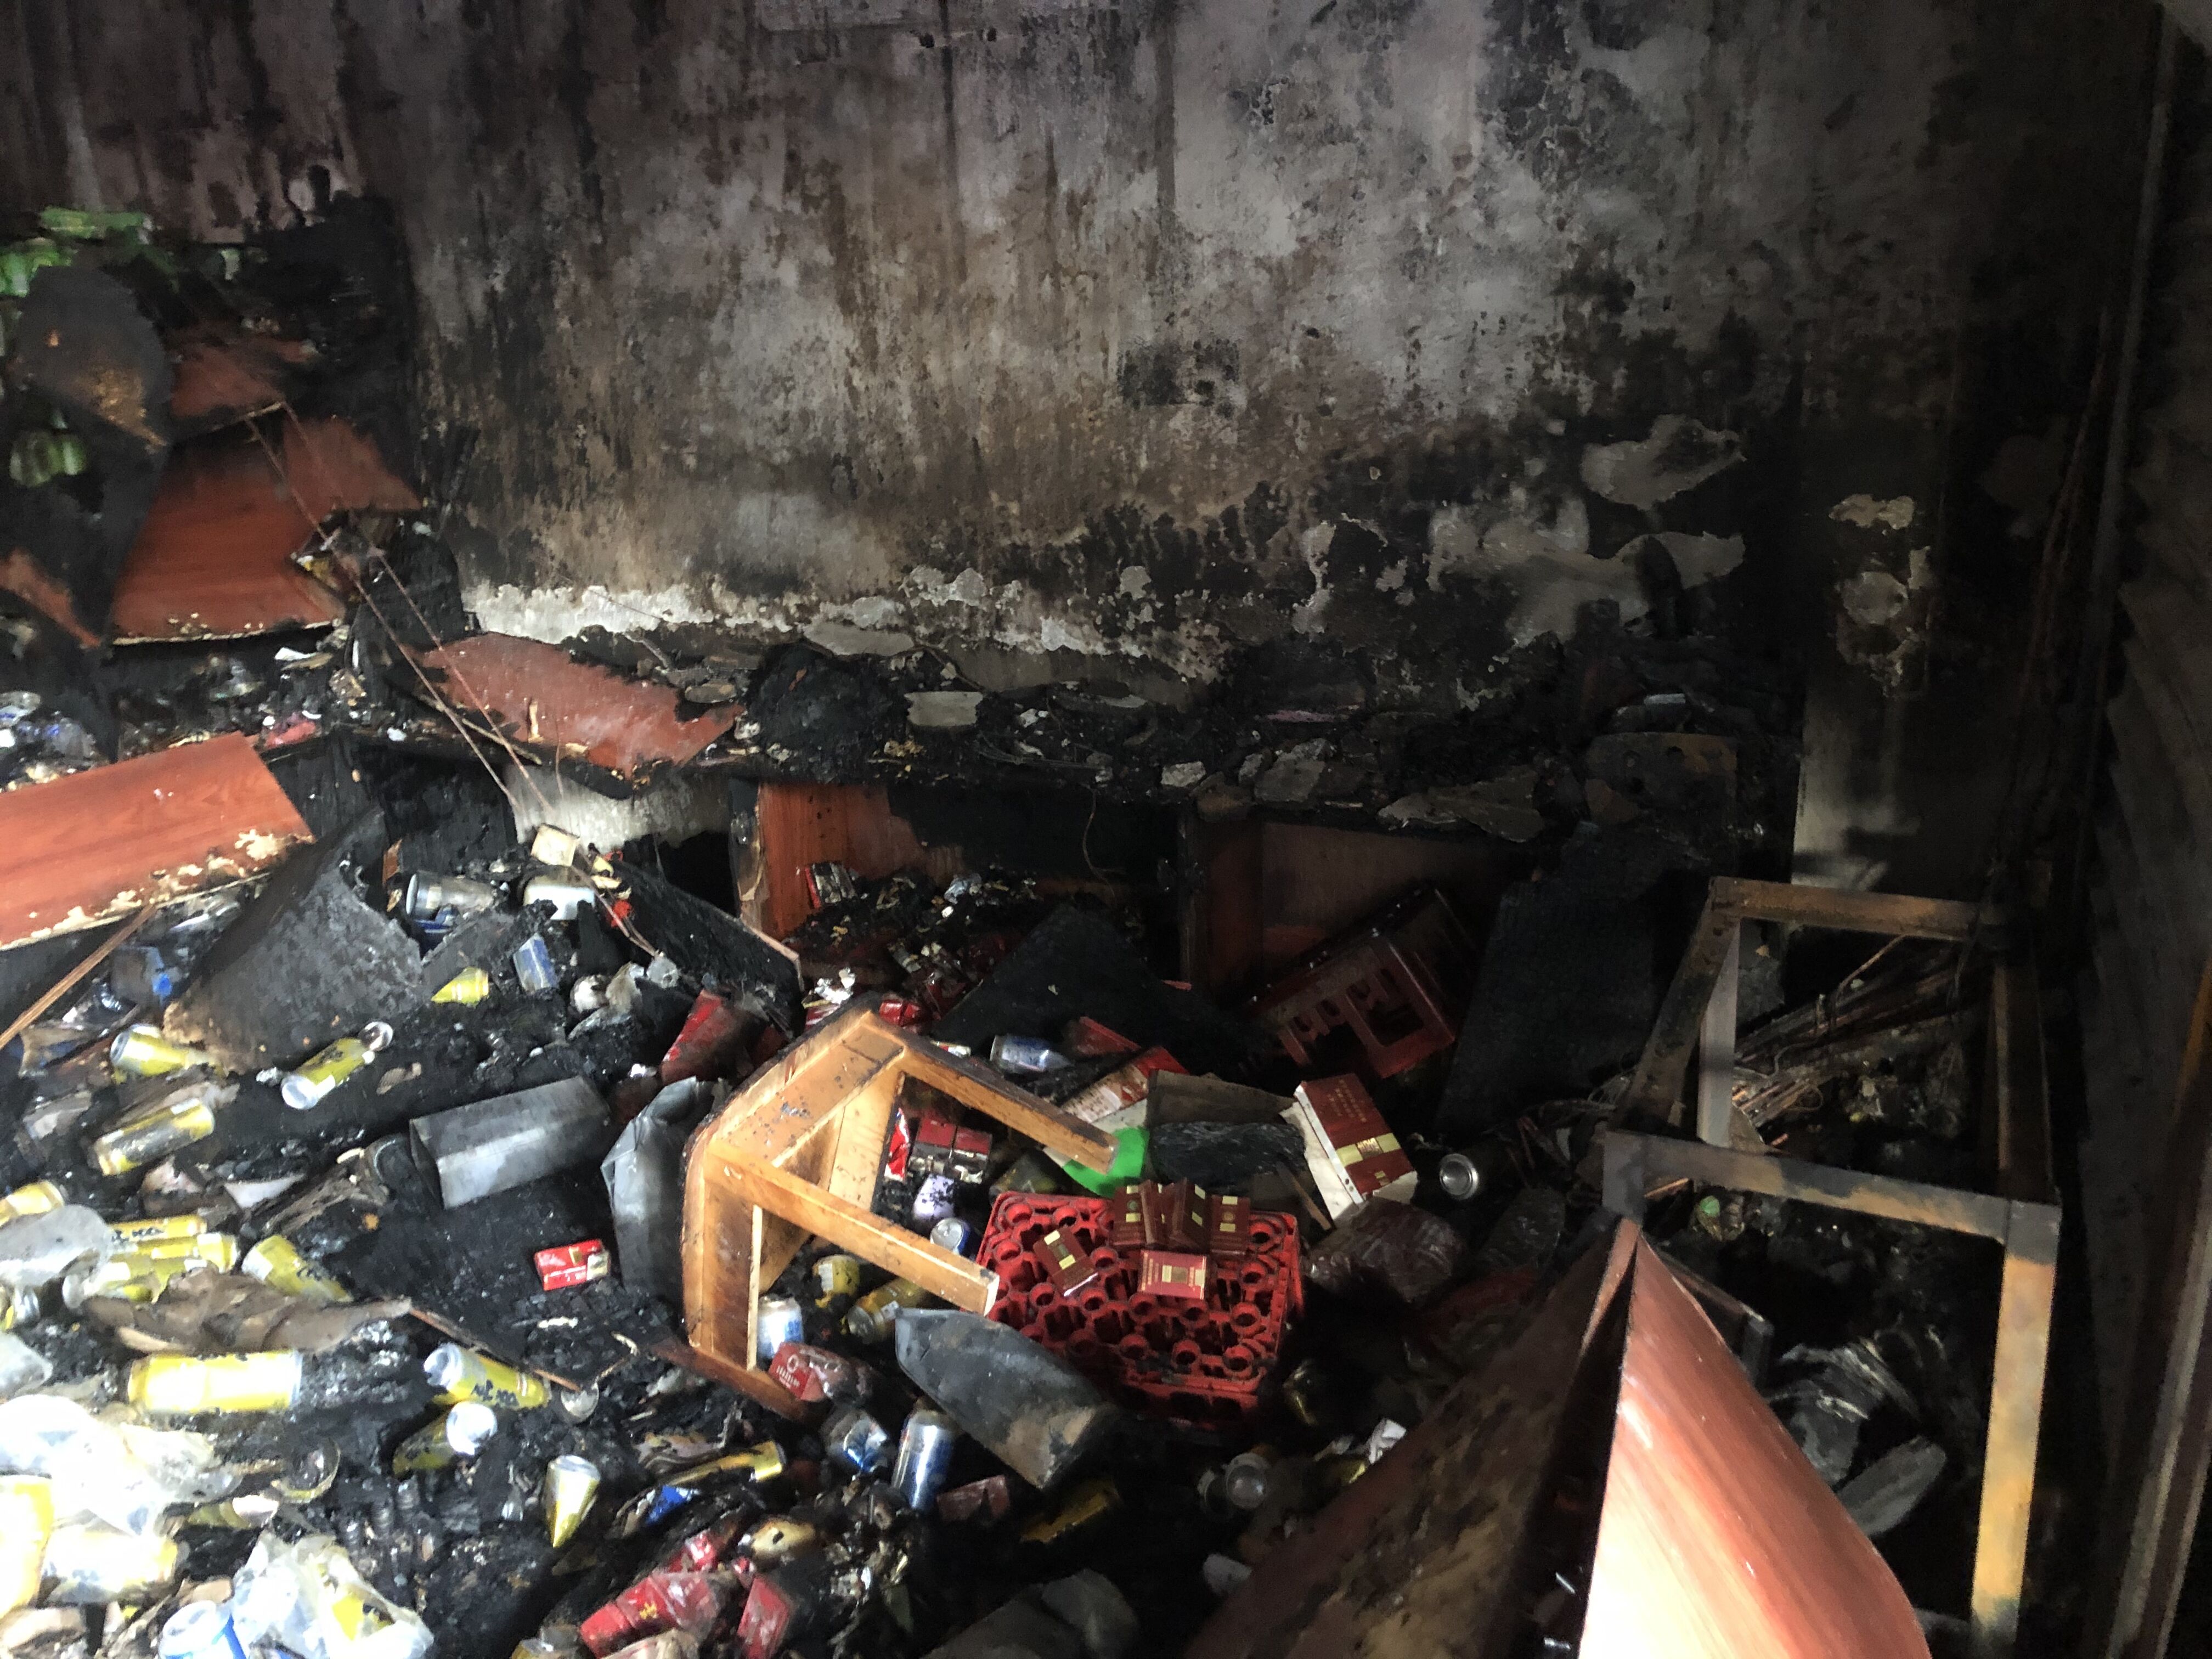 云南香格里拉古城大火 部分艺术品被烧毁损失逾亿元-事故动态-环境健康安全网